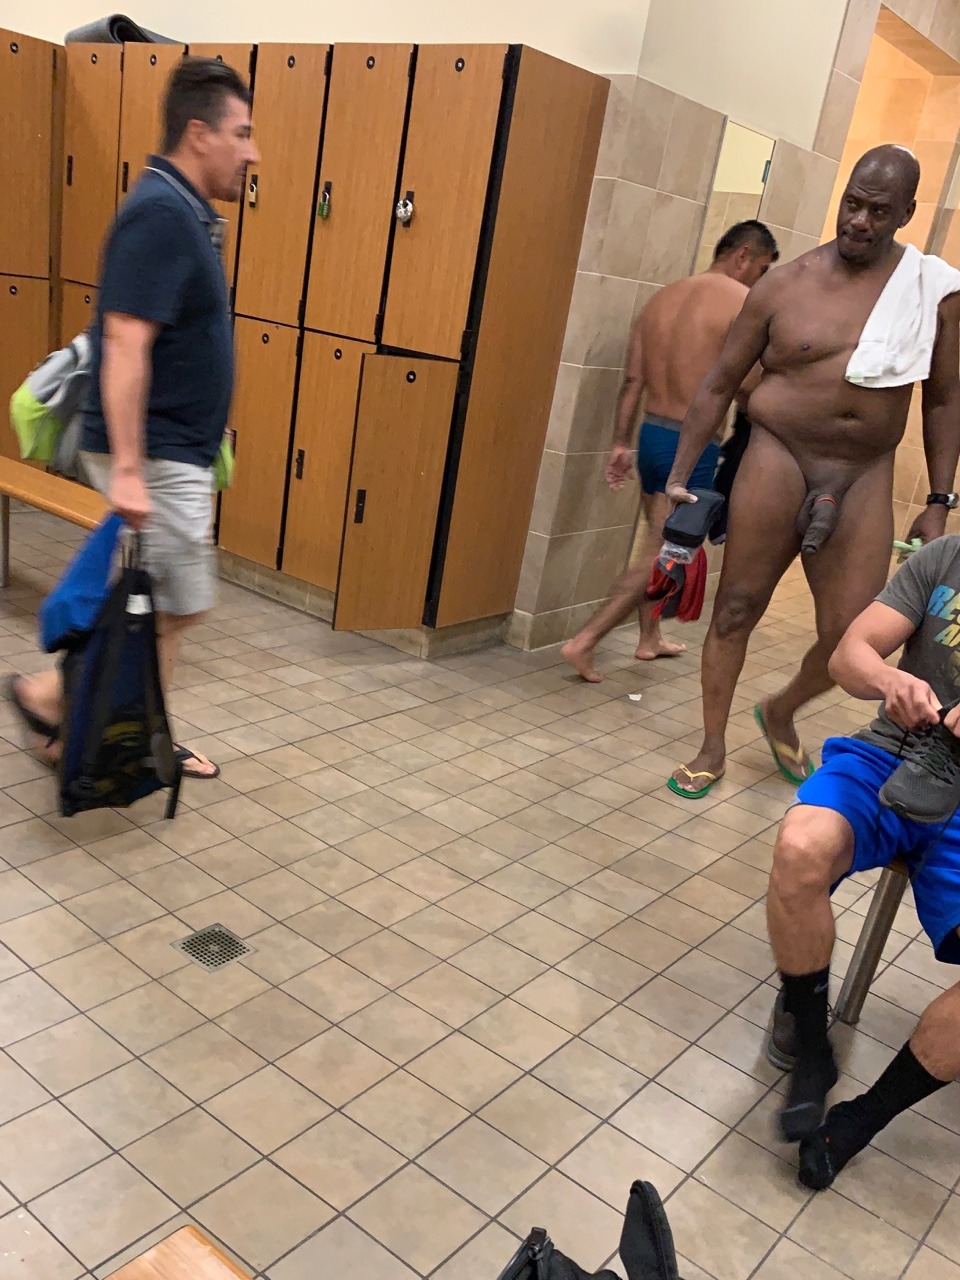 Naked men in locker rooms - 🧡 Naked Men Locker Room Pictures - Be...